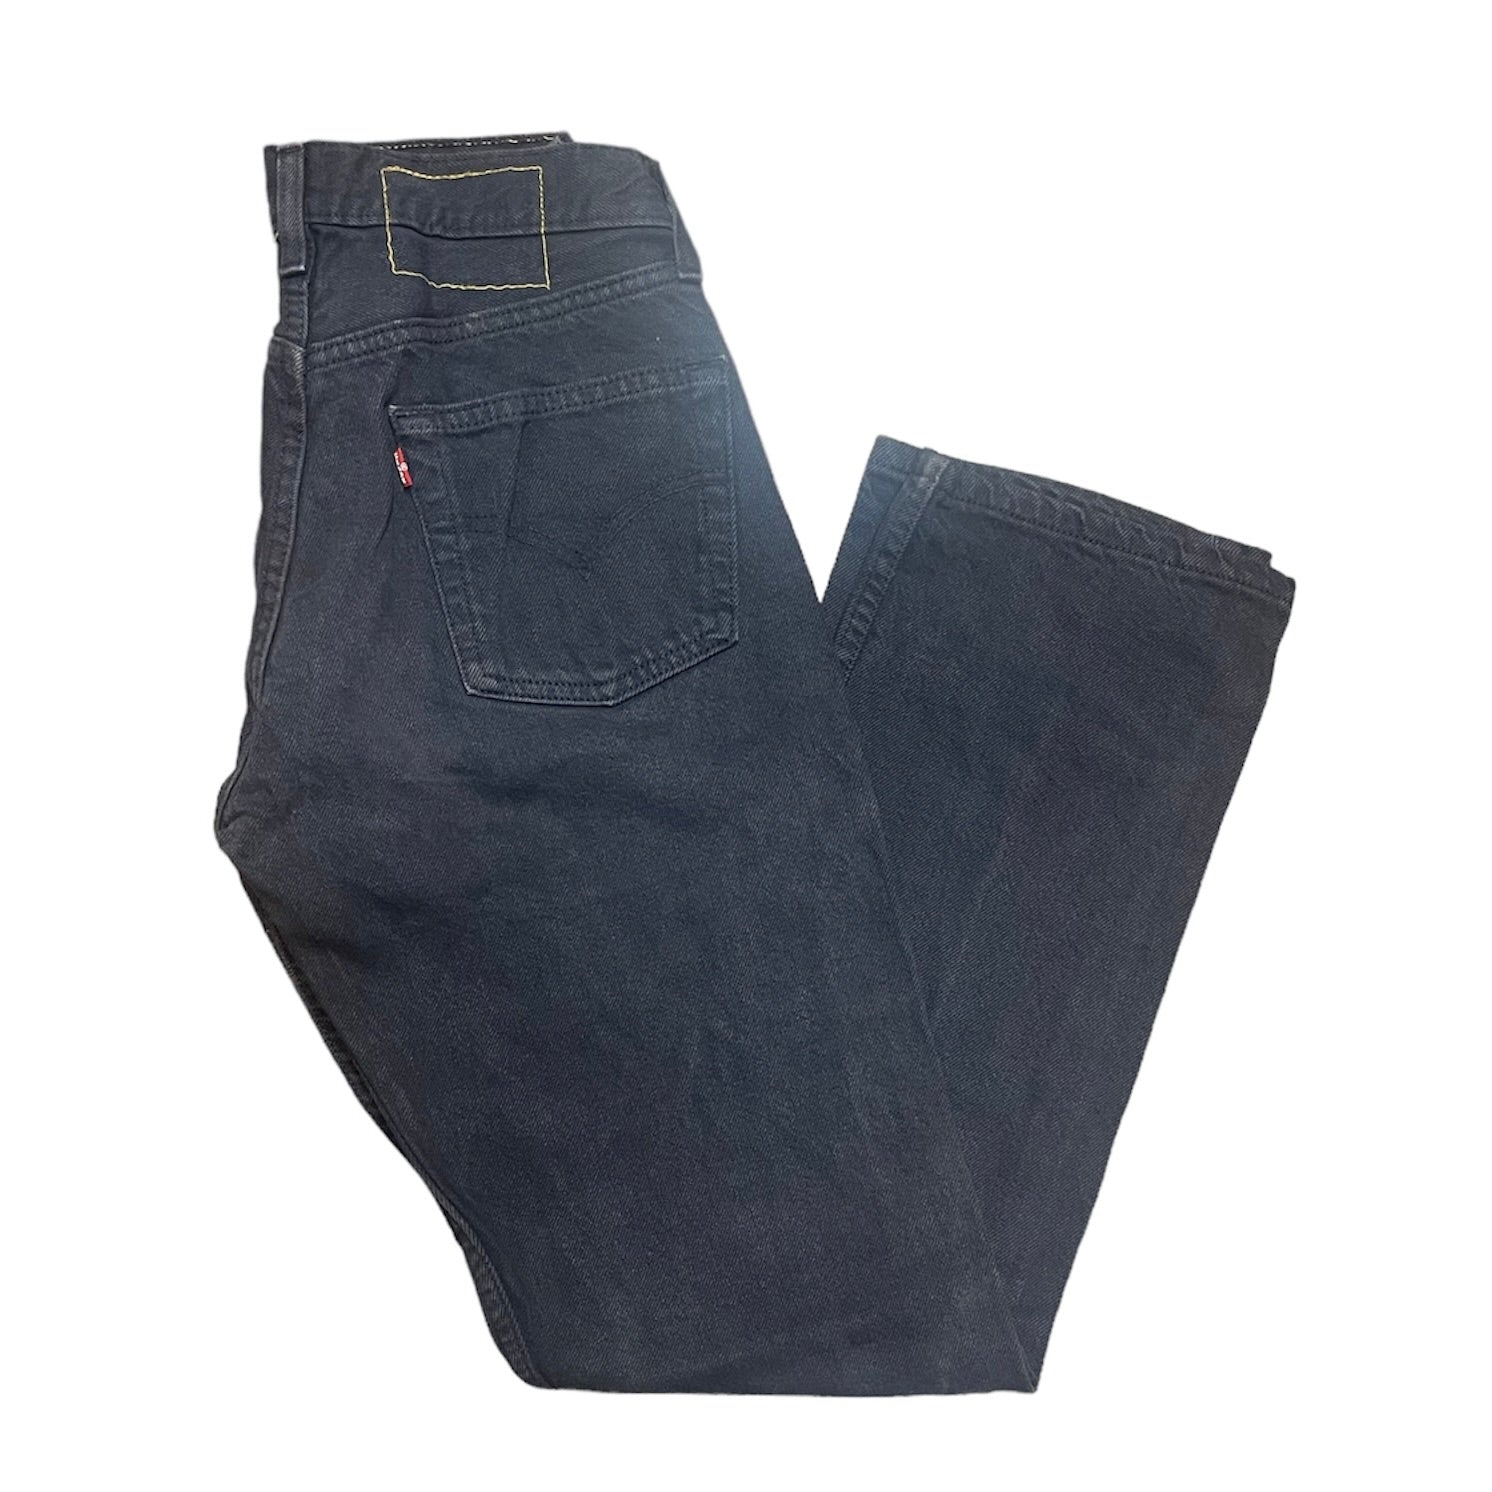 Vintage Levis 501 Indigo Jeans (W28/L30)